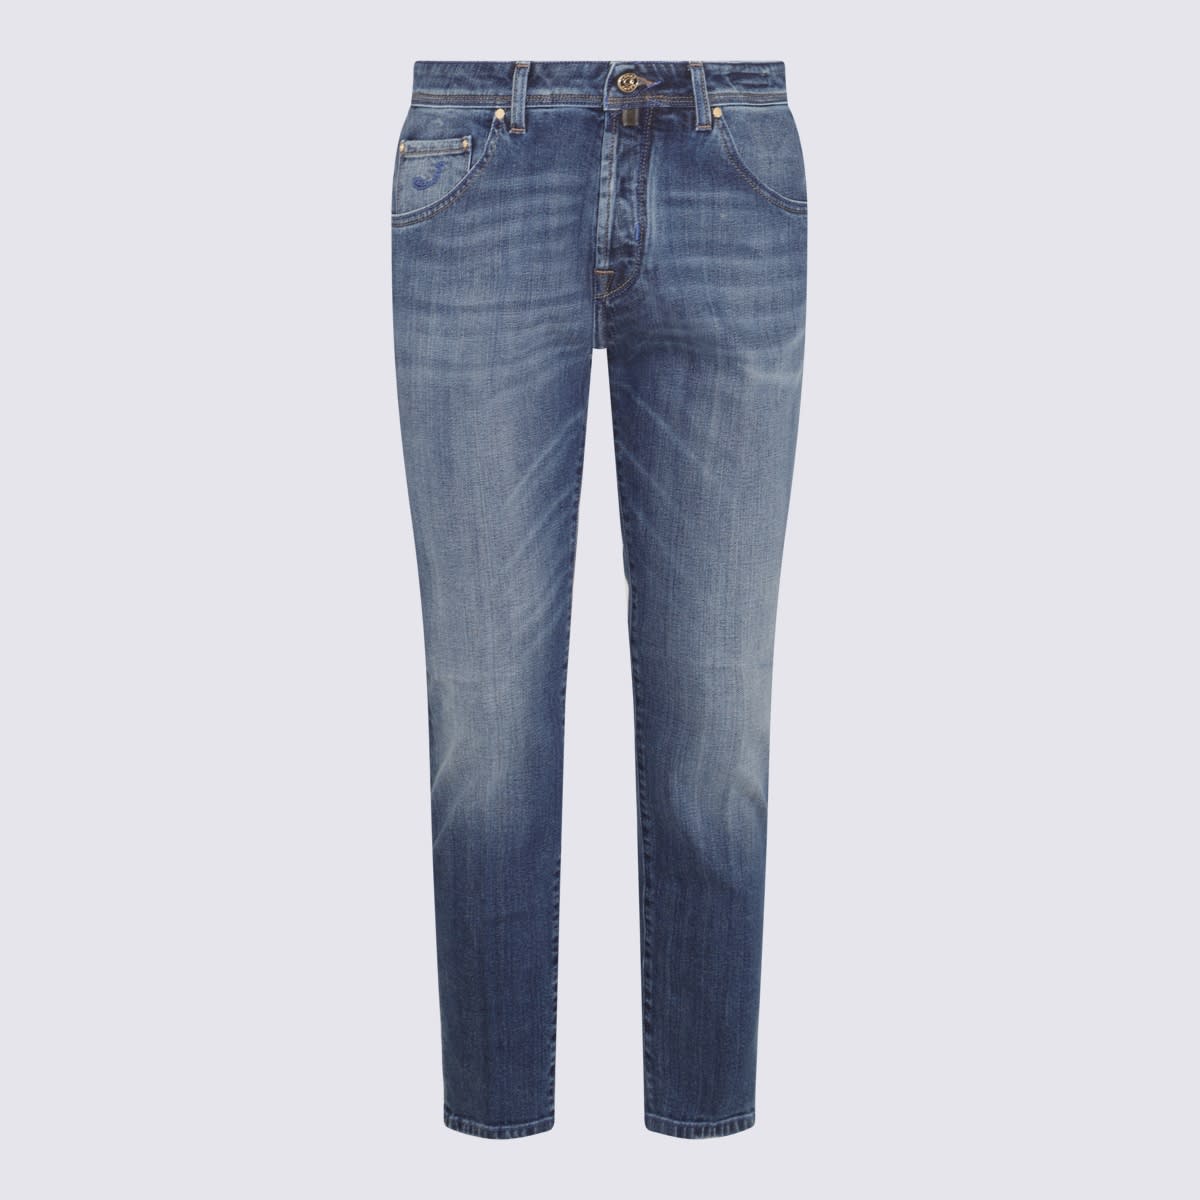 Shop Jacob Cohen Mid Blue Denim Used Jeans